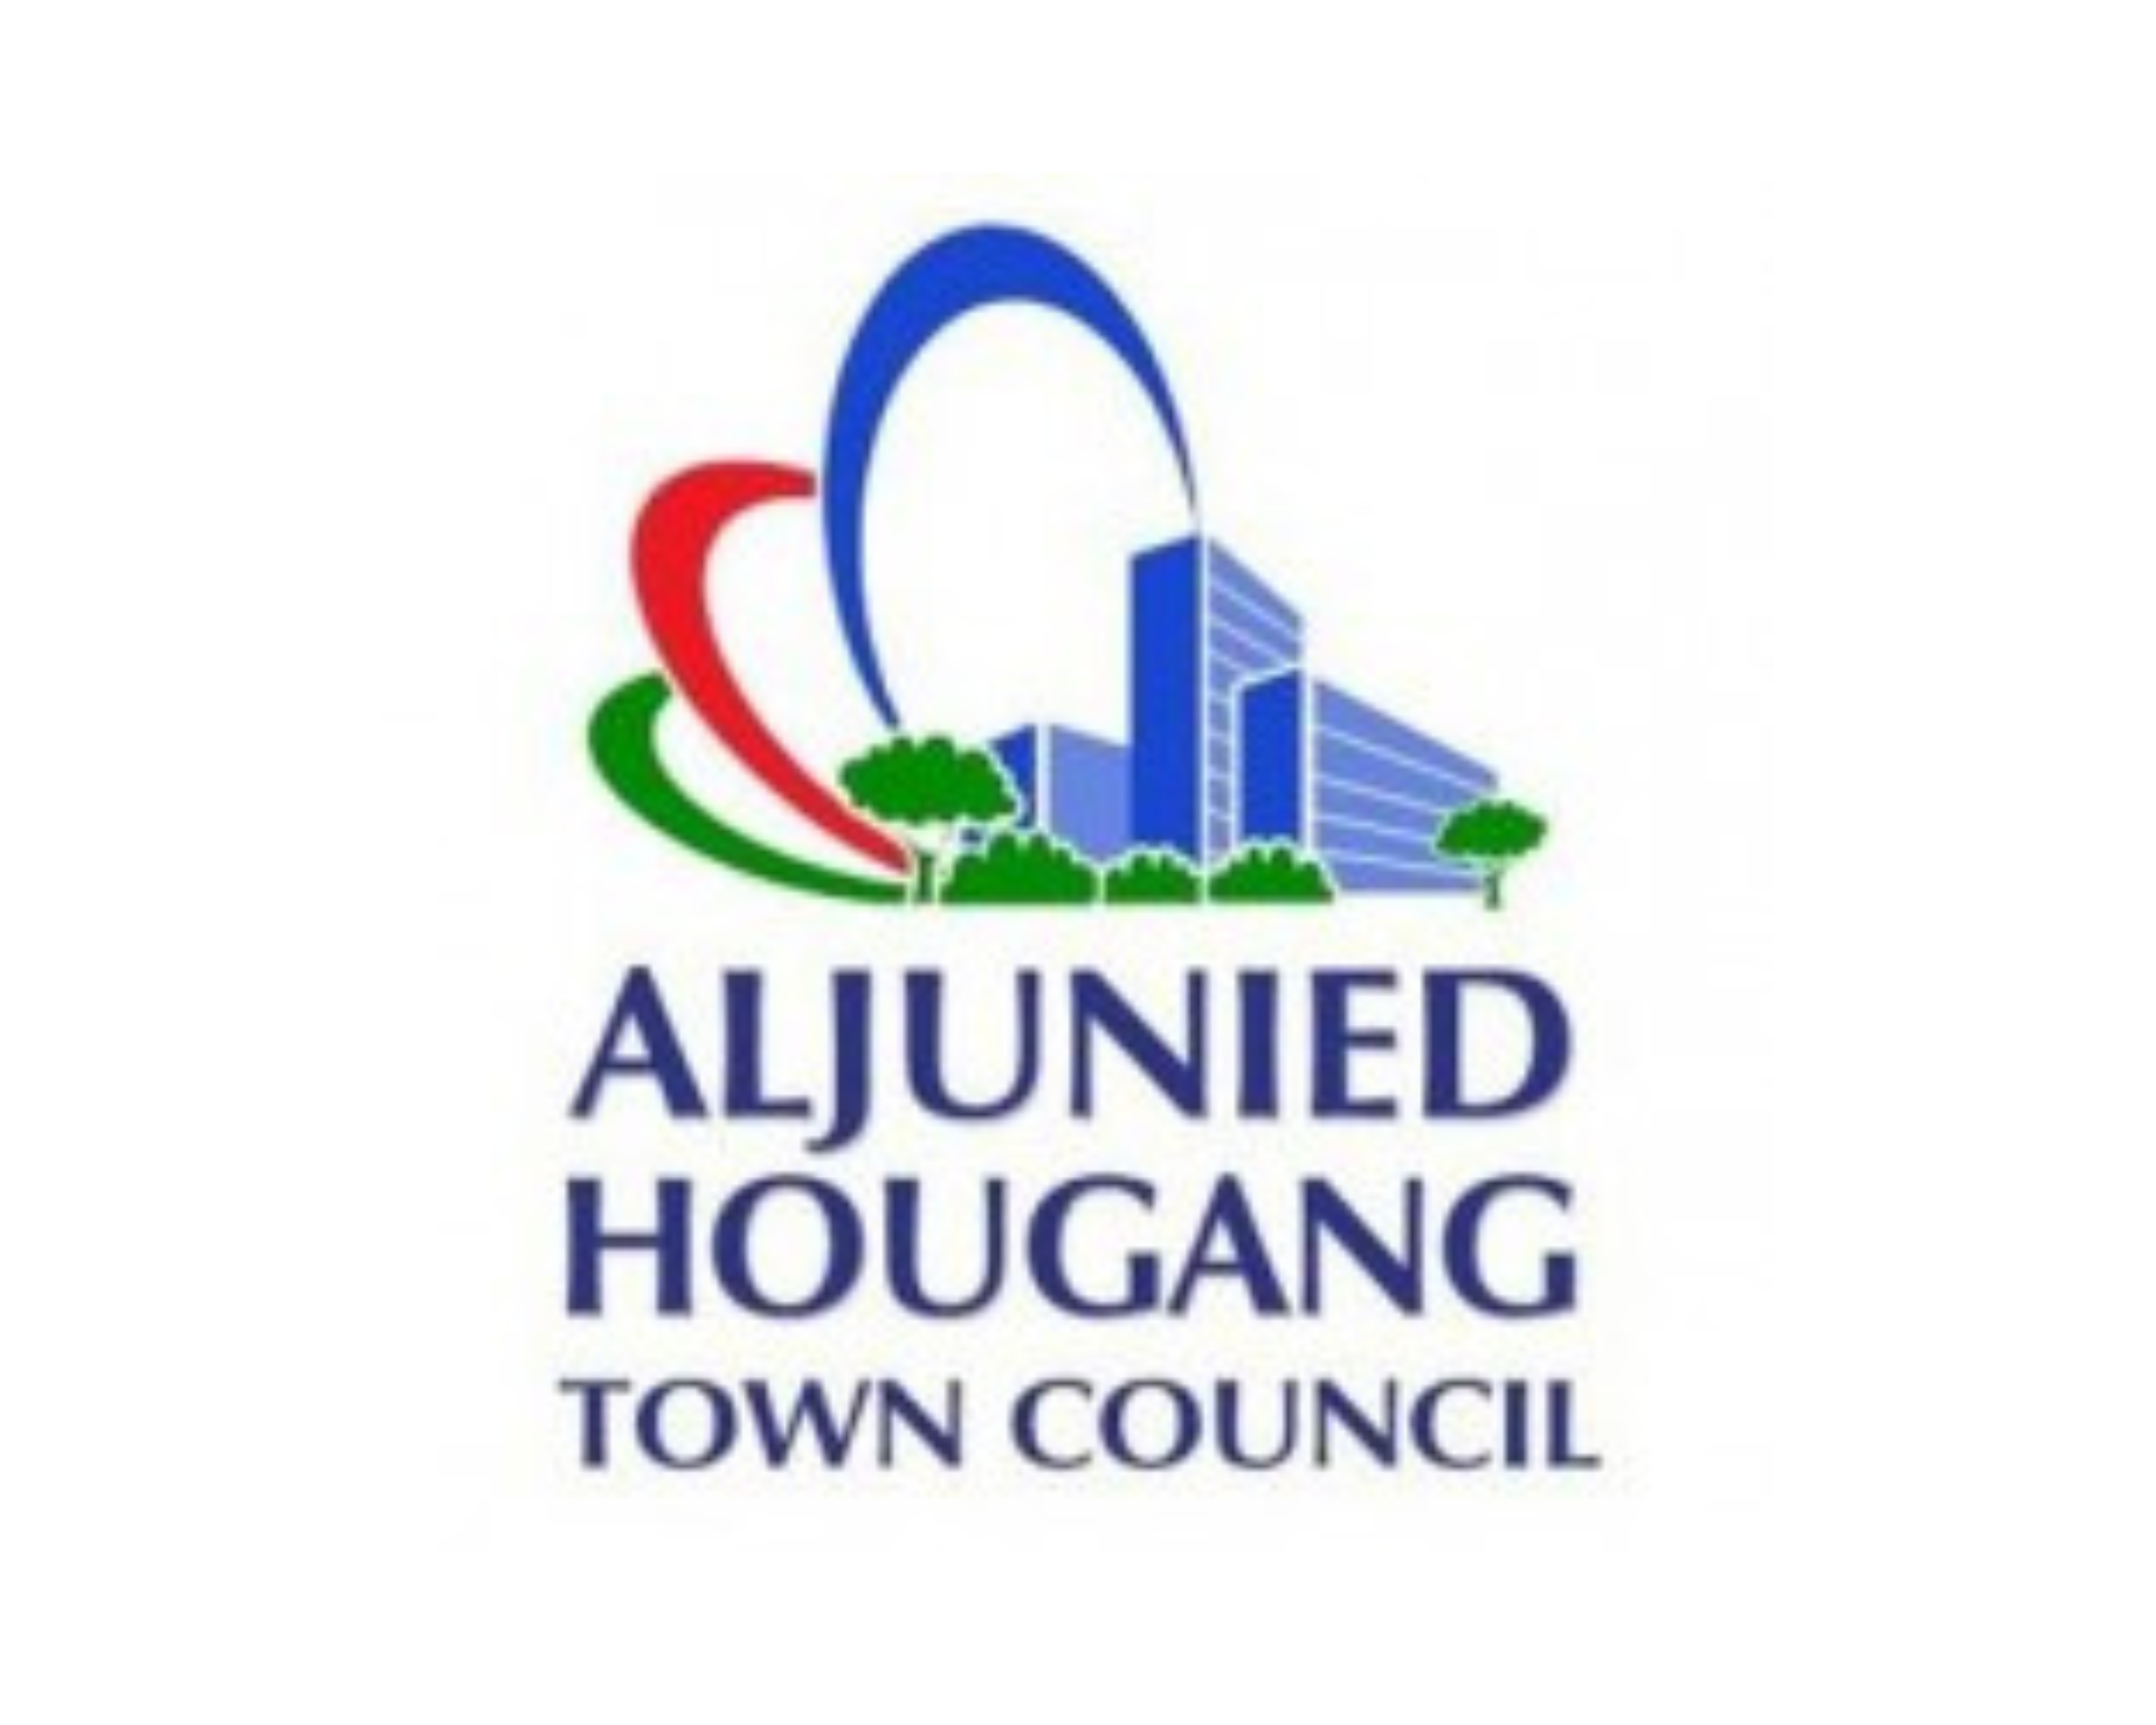 Town Council Logo